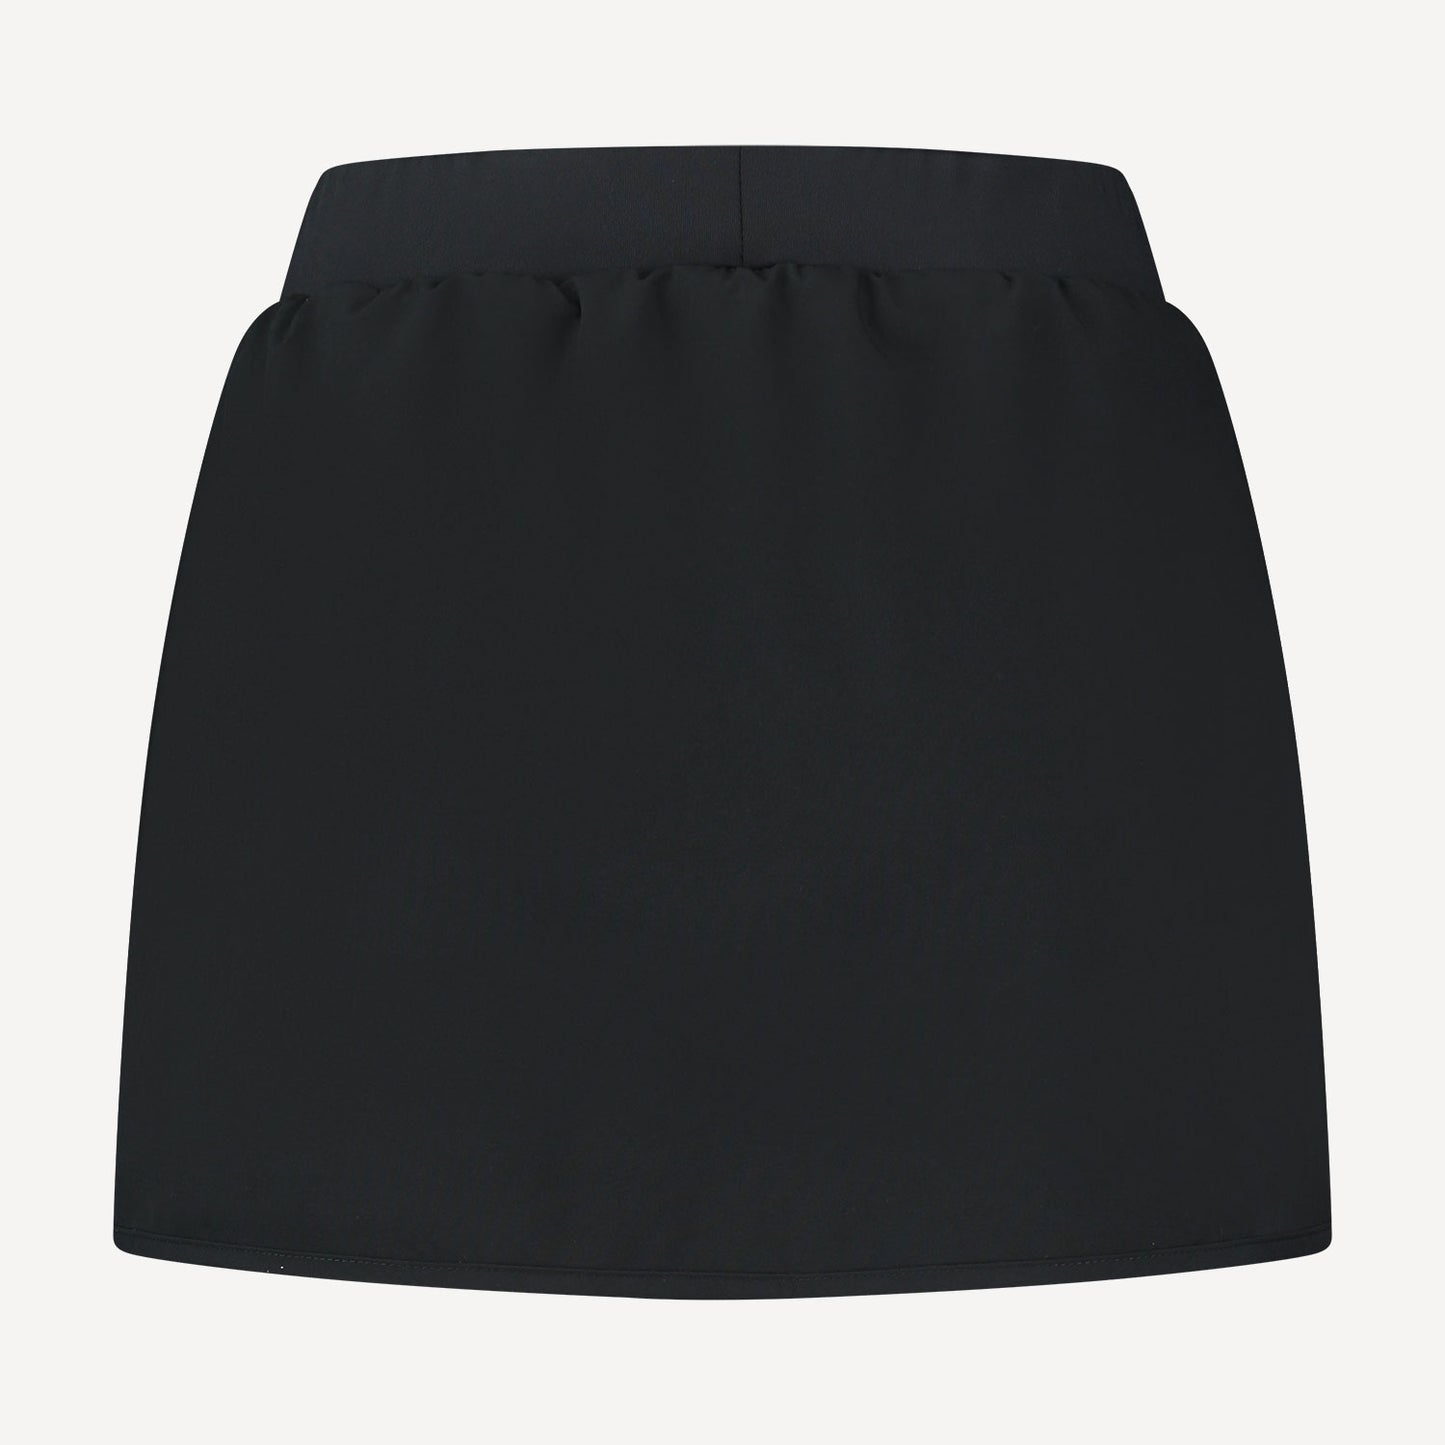 K-Swiss Hypercourt Women's Tennis Skirt Black (2)